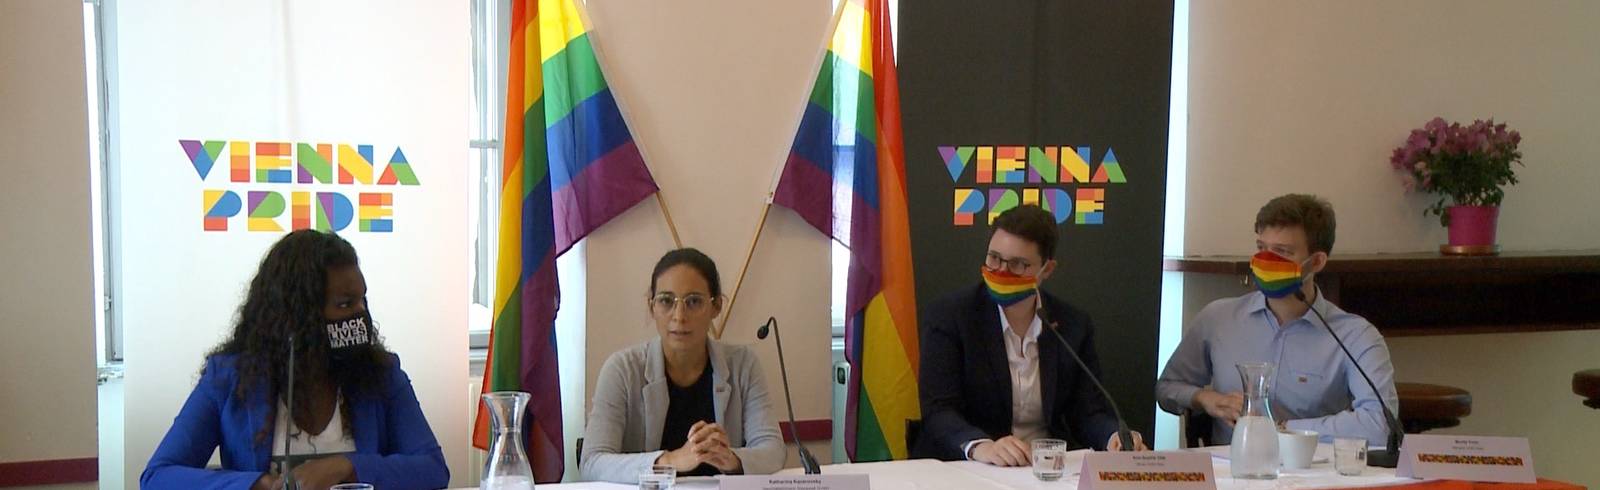 Vienna Pride 2020: Regenbogen-Corso statt Parade